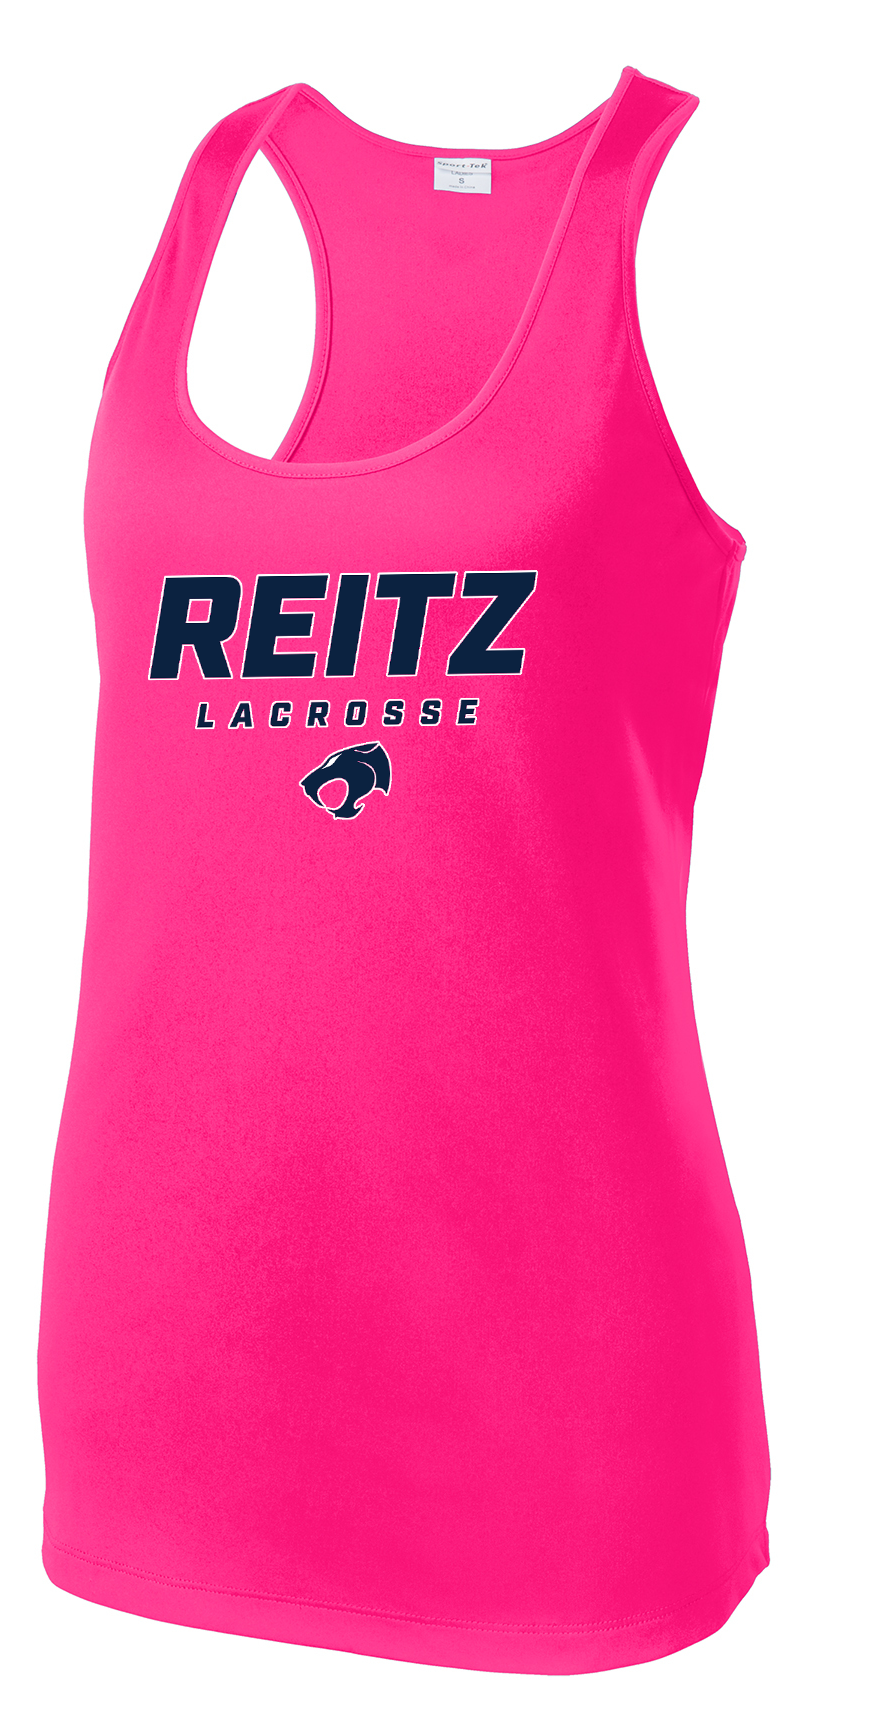 Reitz Lacrosse Women's Neon Pink Racerback Tank